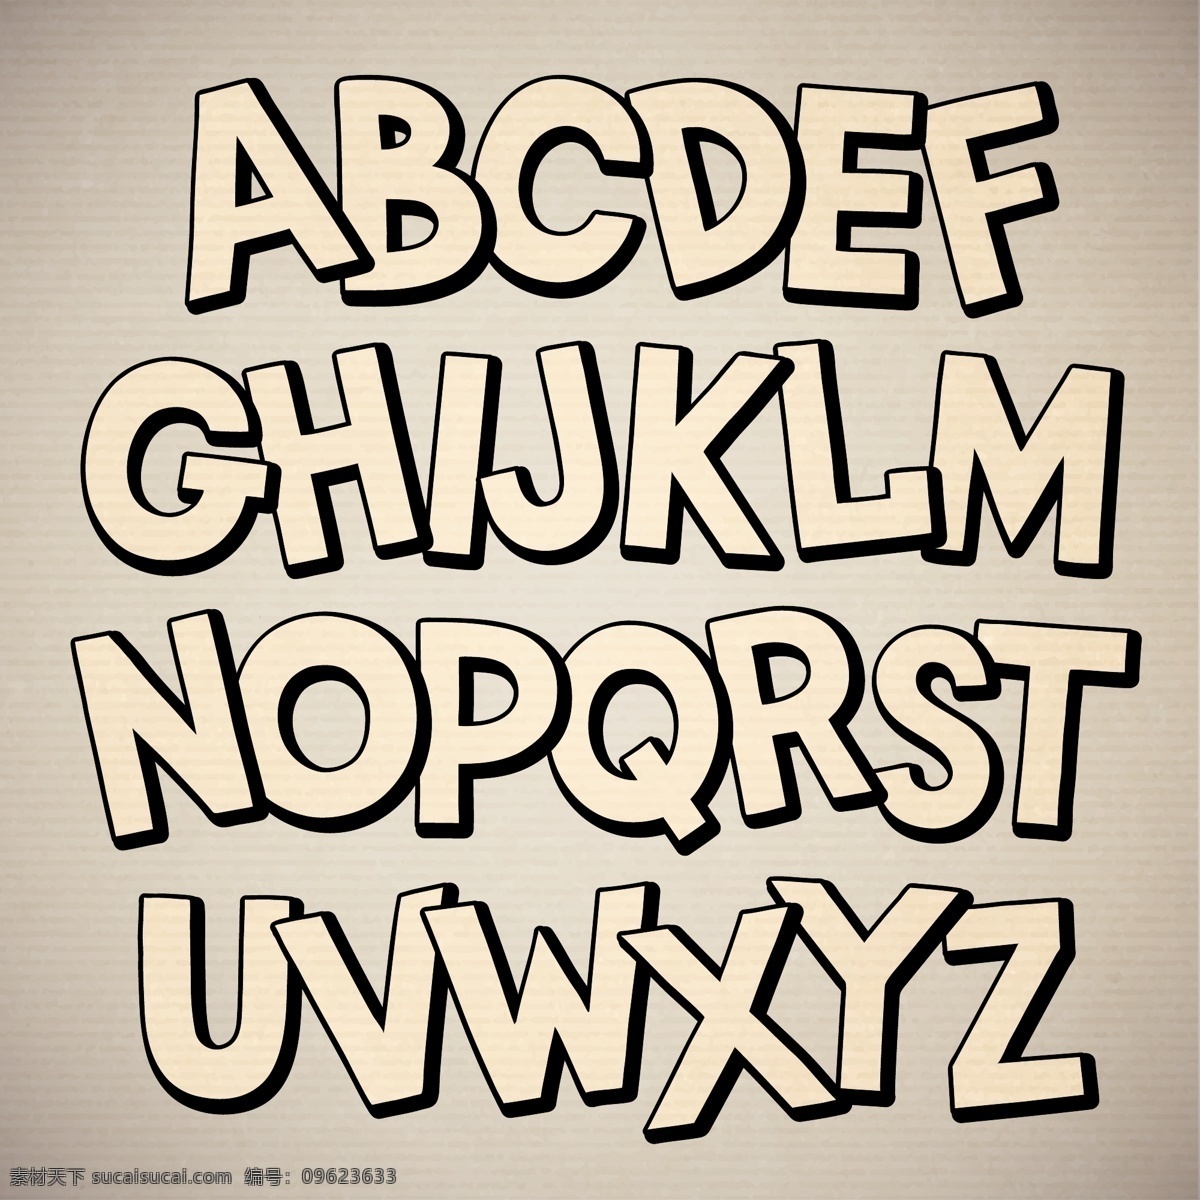 立体字母 金色字母 黄色字母 活泼字母 儿童字母 时尚字母 现代字母 矢量字母 字母设计 卡通字母 手绘字母 字母插画 简洁字母 简约字母 几何字母 创意字母 艺术字母 积木字母 数字字母 标志图标 其他图标